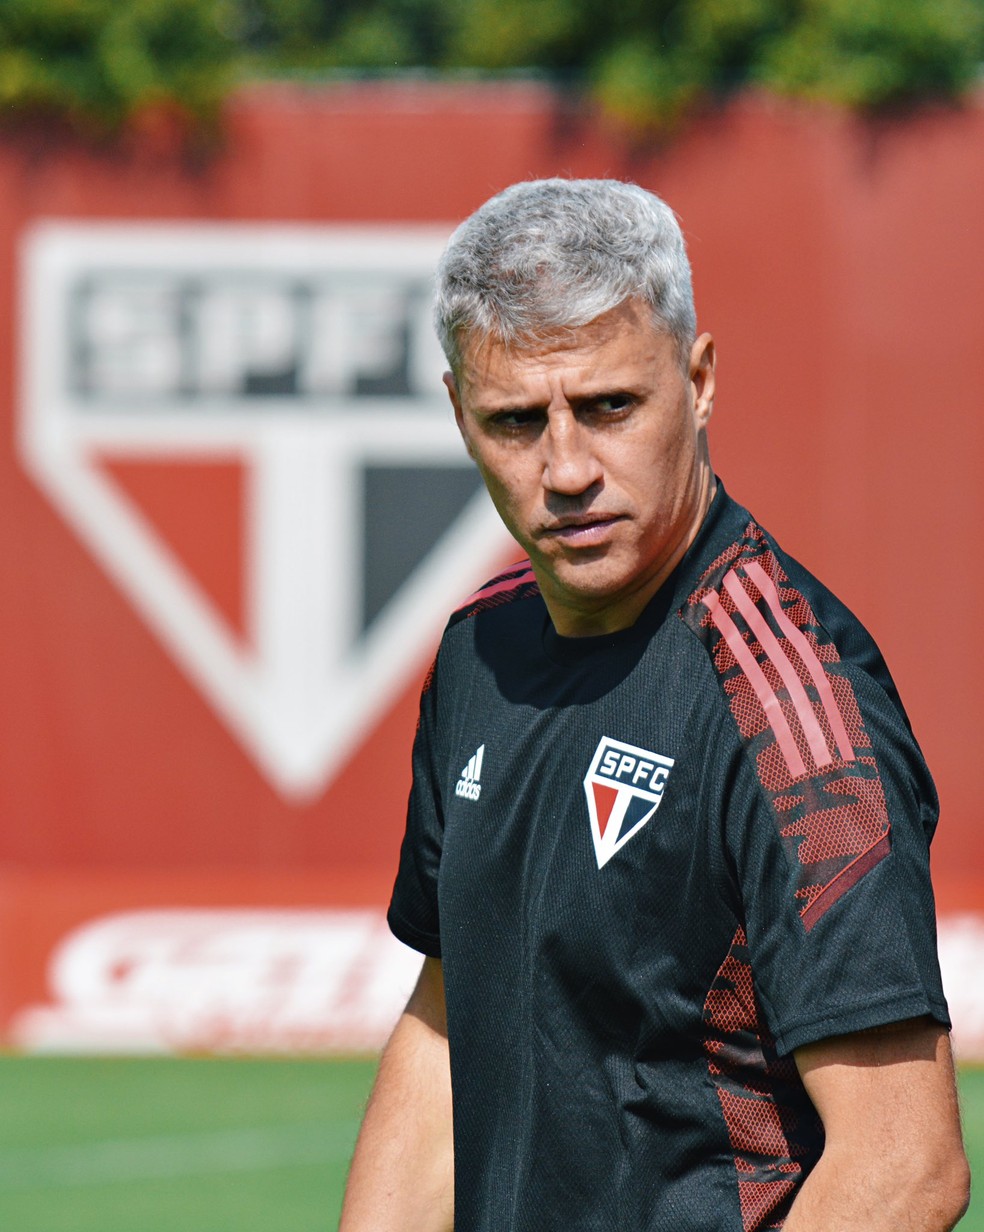 Crespo elogia desempenho do São Paulo no Campeonato Brasileiro: “O